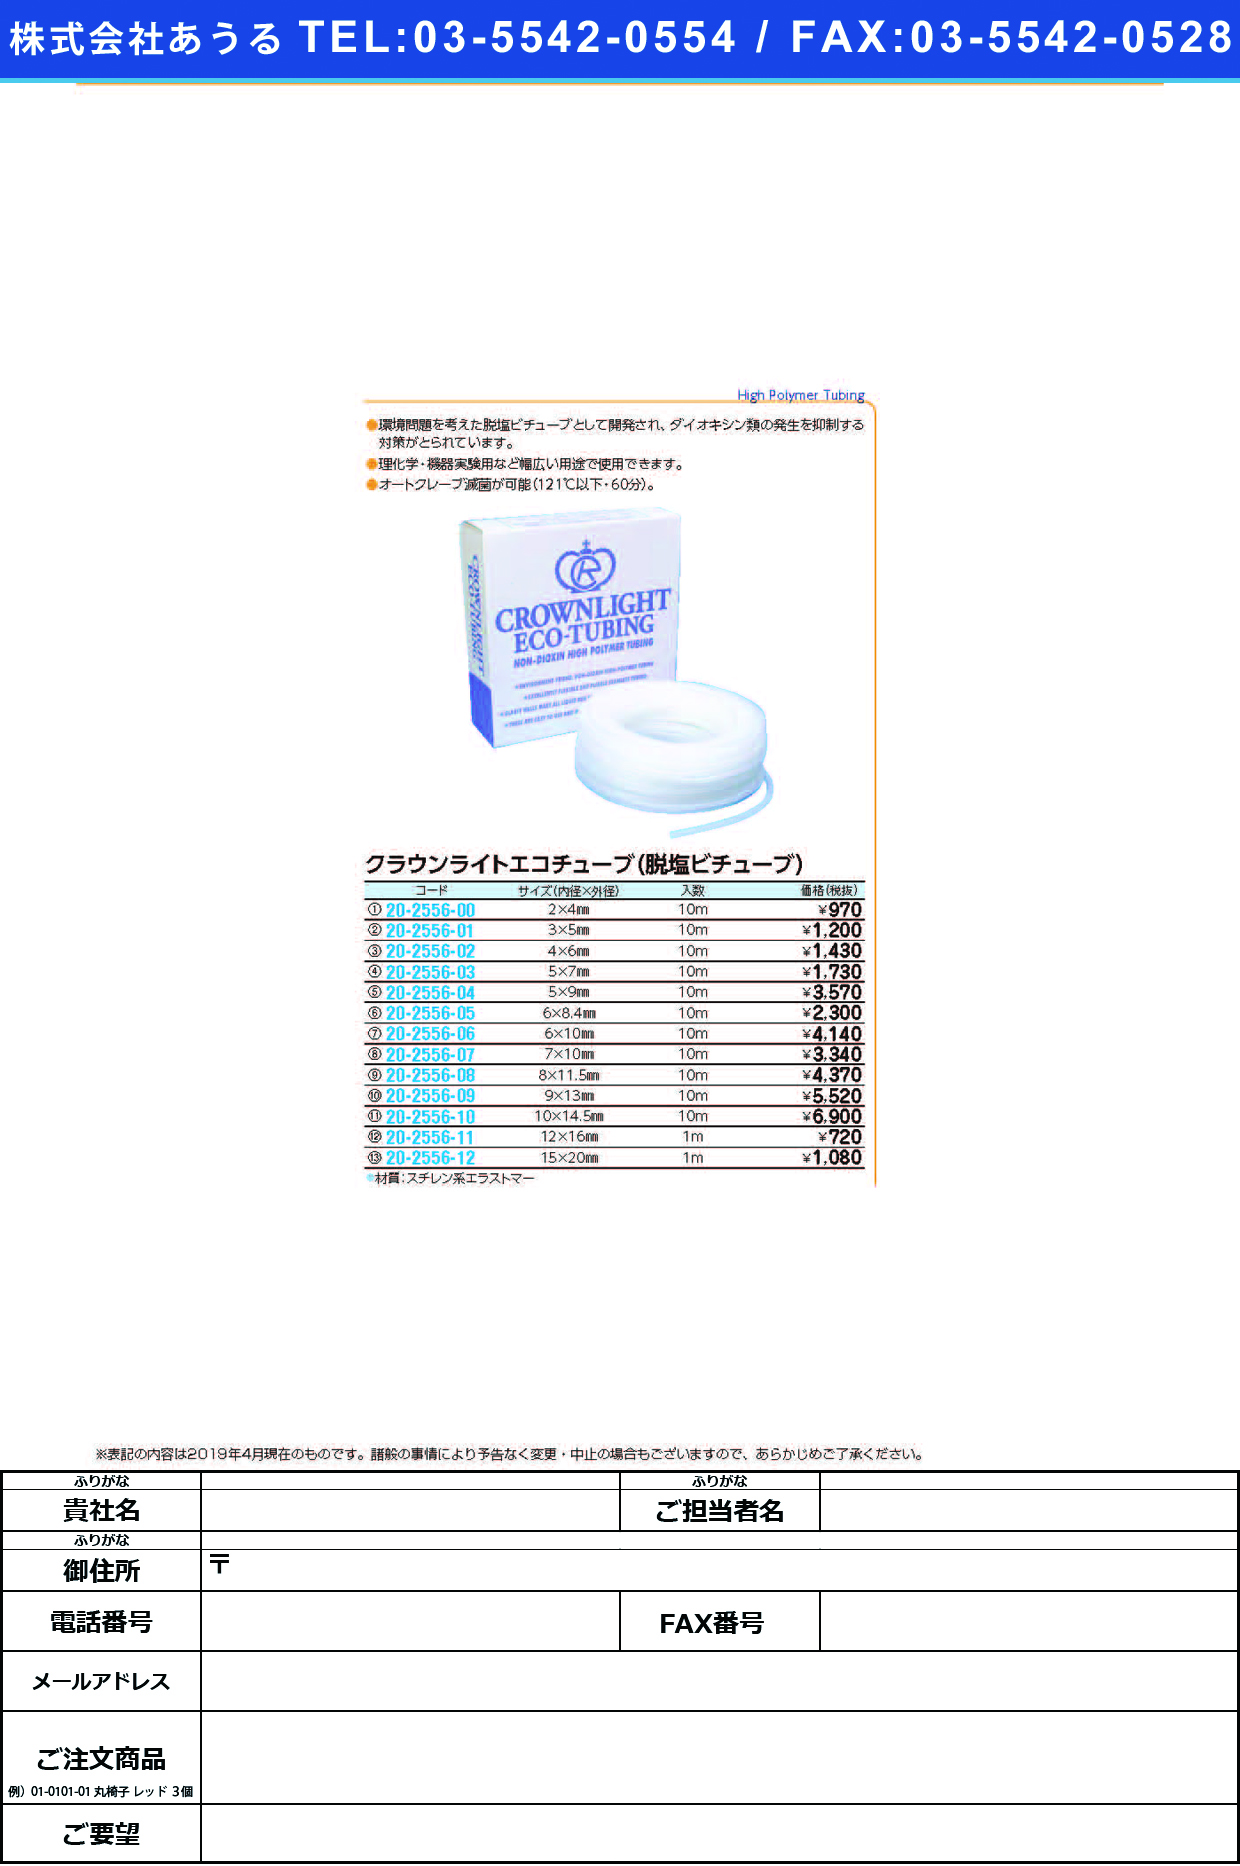 (20-2556-12)クラウンライトエコチューブ 15.0X20.0(1Mｲﾘ) ｸﾗｳﾝﾗｲﾄｴｺﾁｭｰﾌﾞ【1袋単位】【2019年カタログ商品】